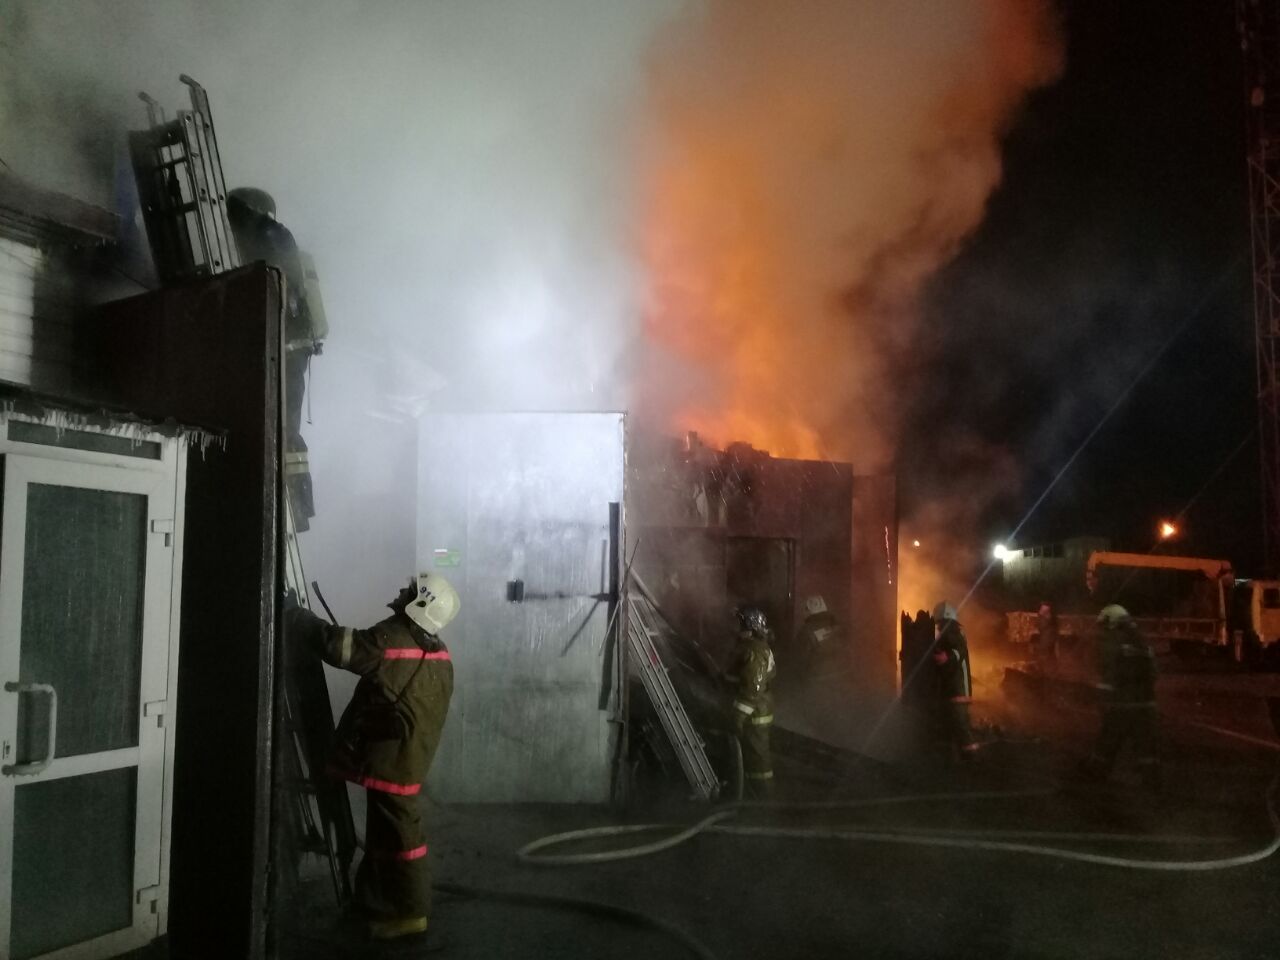 17 Ларьков пострадало в результате пожара, который вспыхнул в южной столице